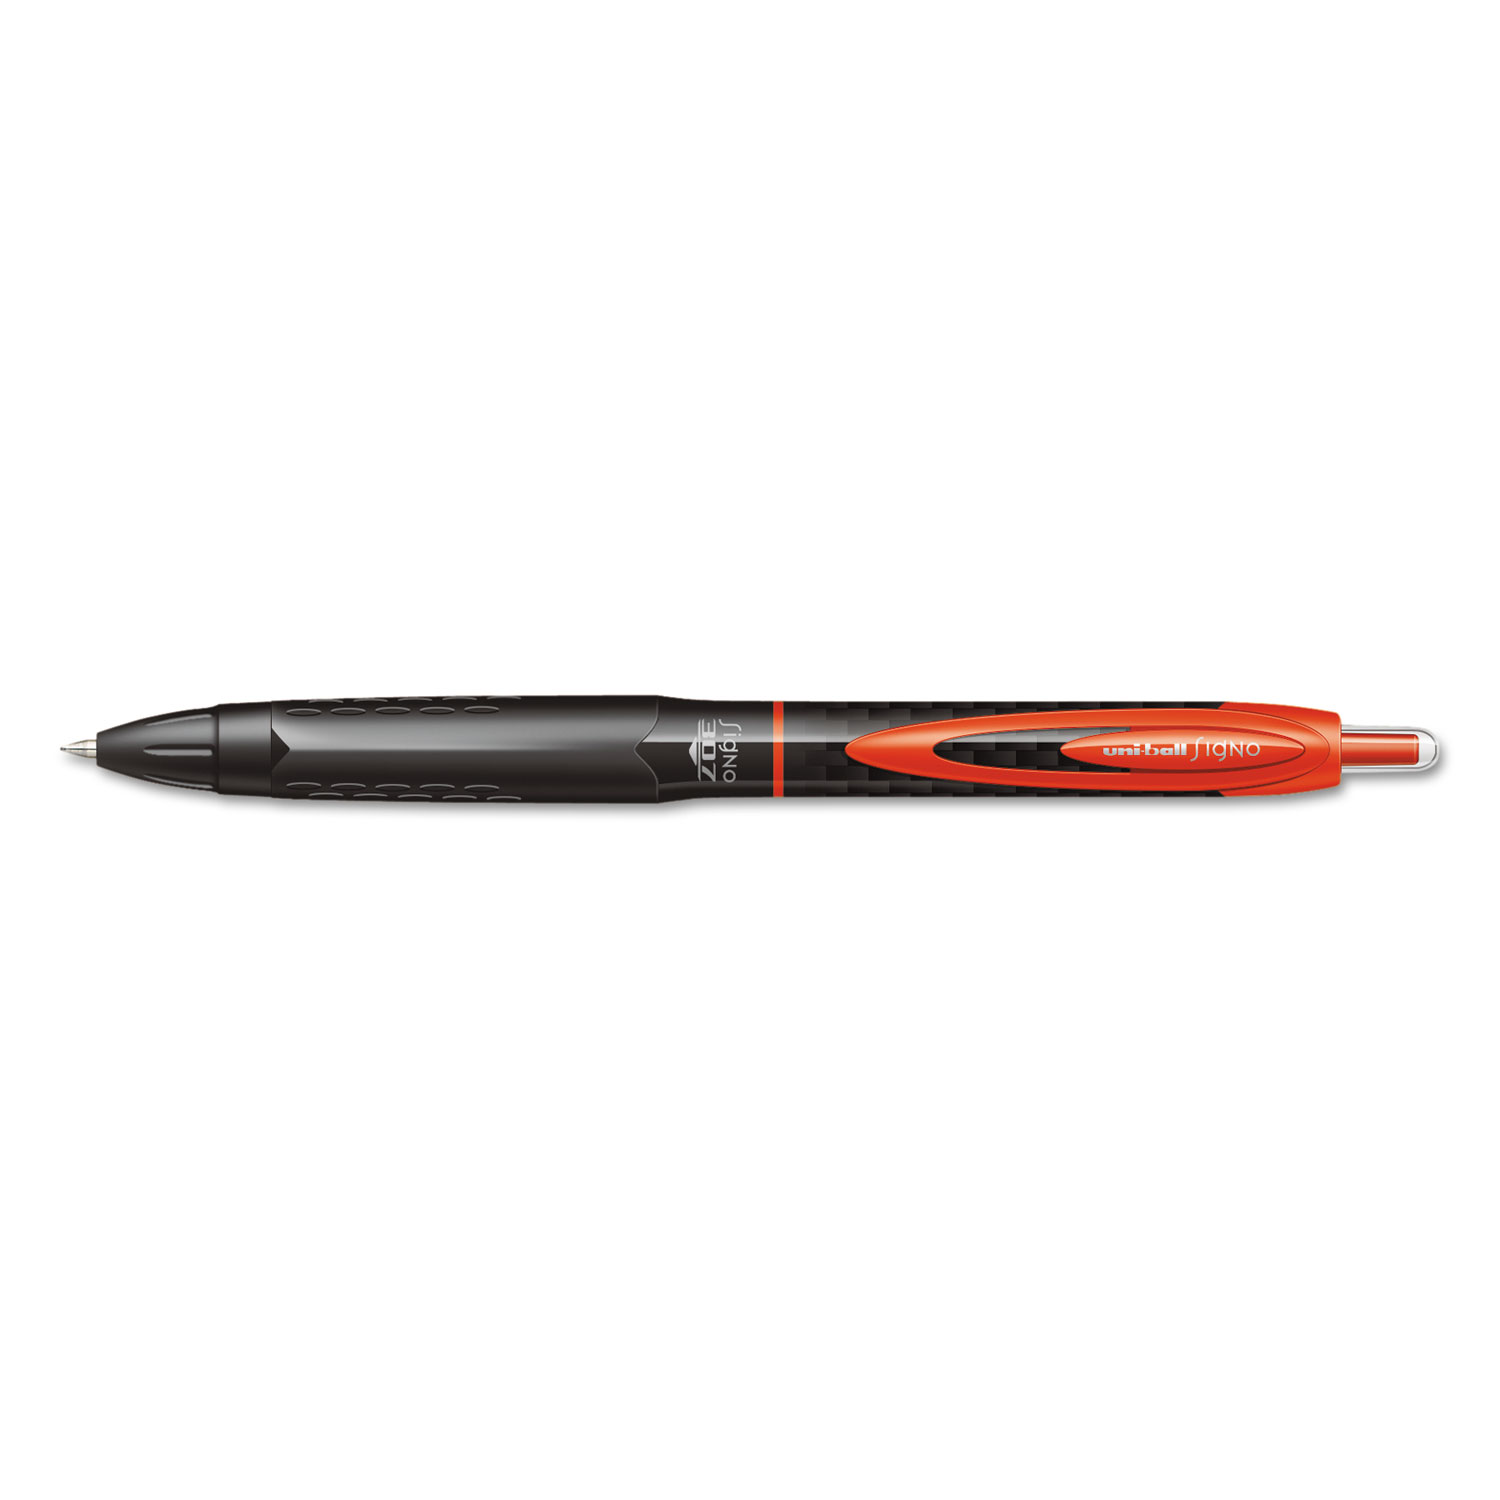 Ручка гелевая Uni Ball signo 307 RT (0.7MMBLUE) unn-307 Blue. Uni Mitsubishi Pencil signo Eco UMN-105 форум.